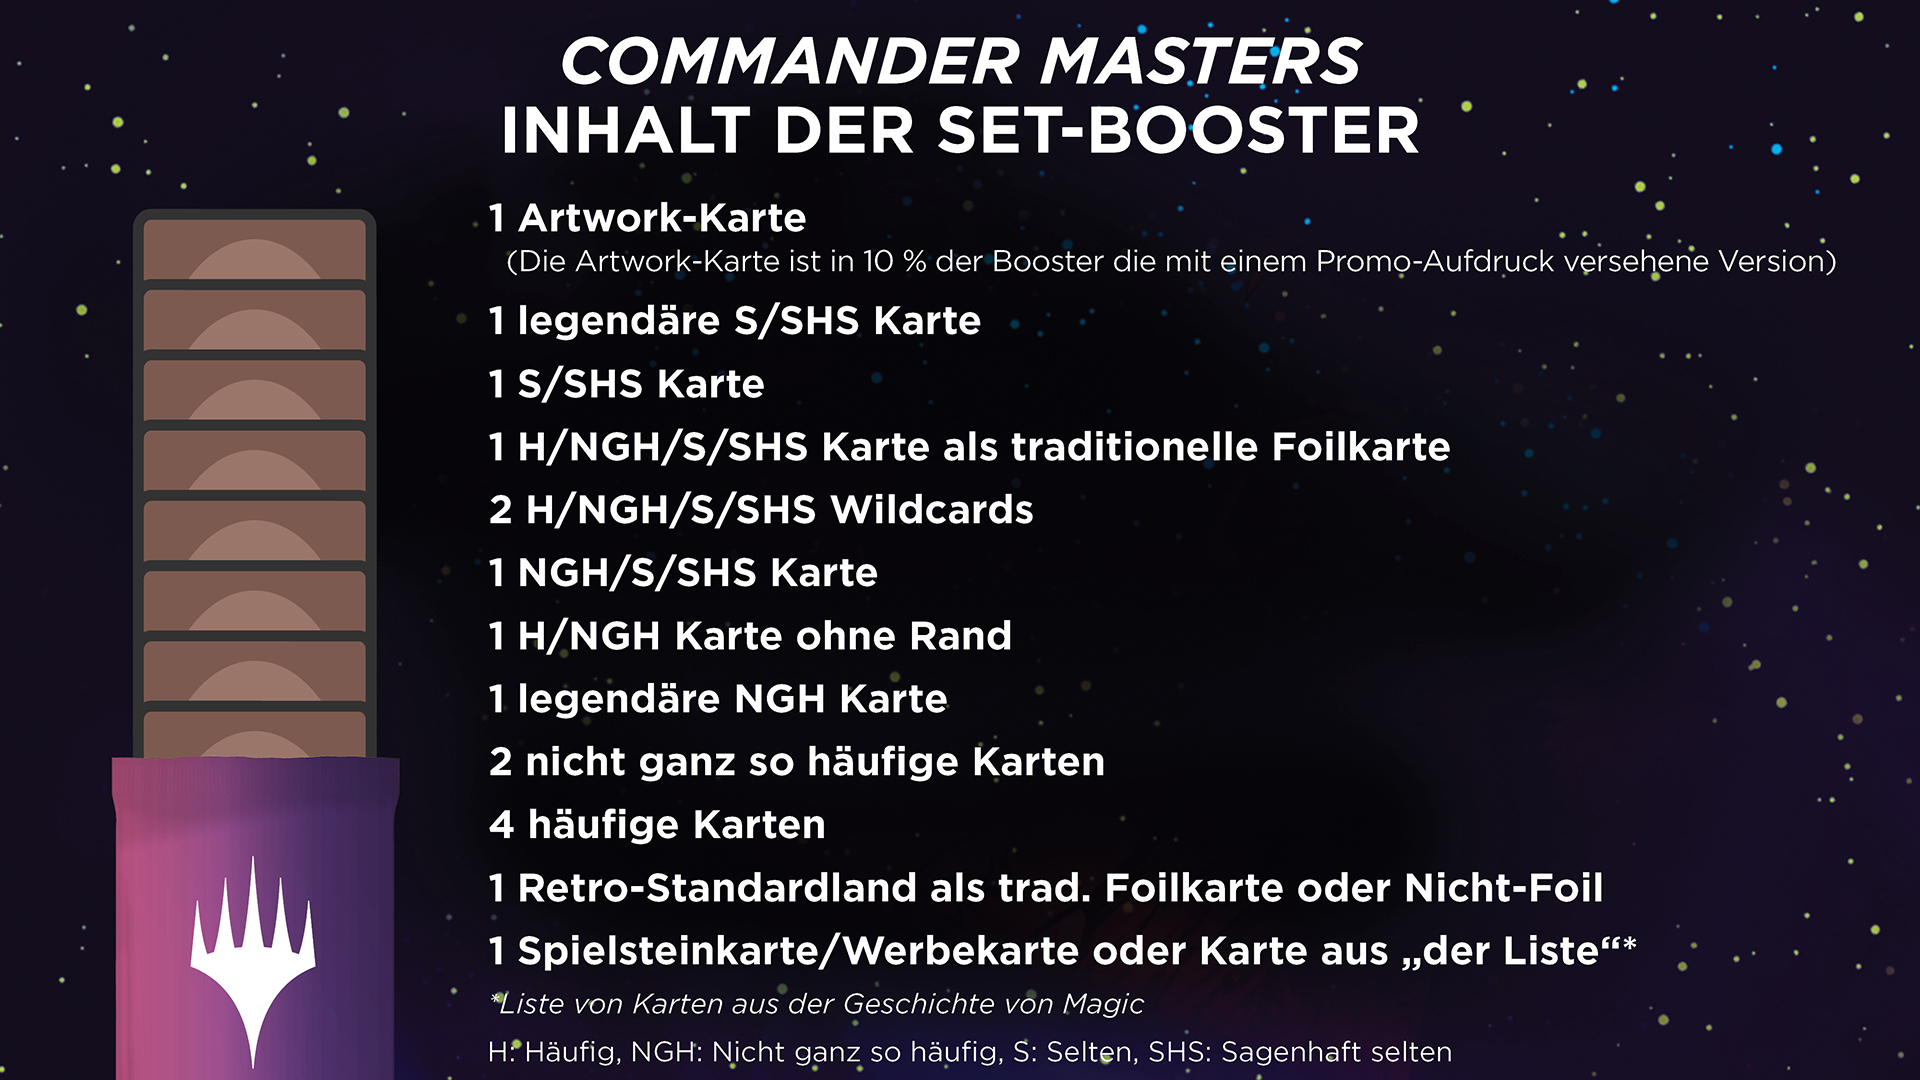 Inhalt der Commander Masters Set-Booster